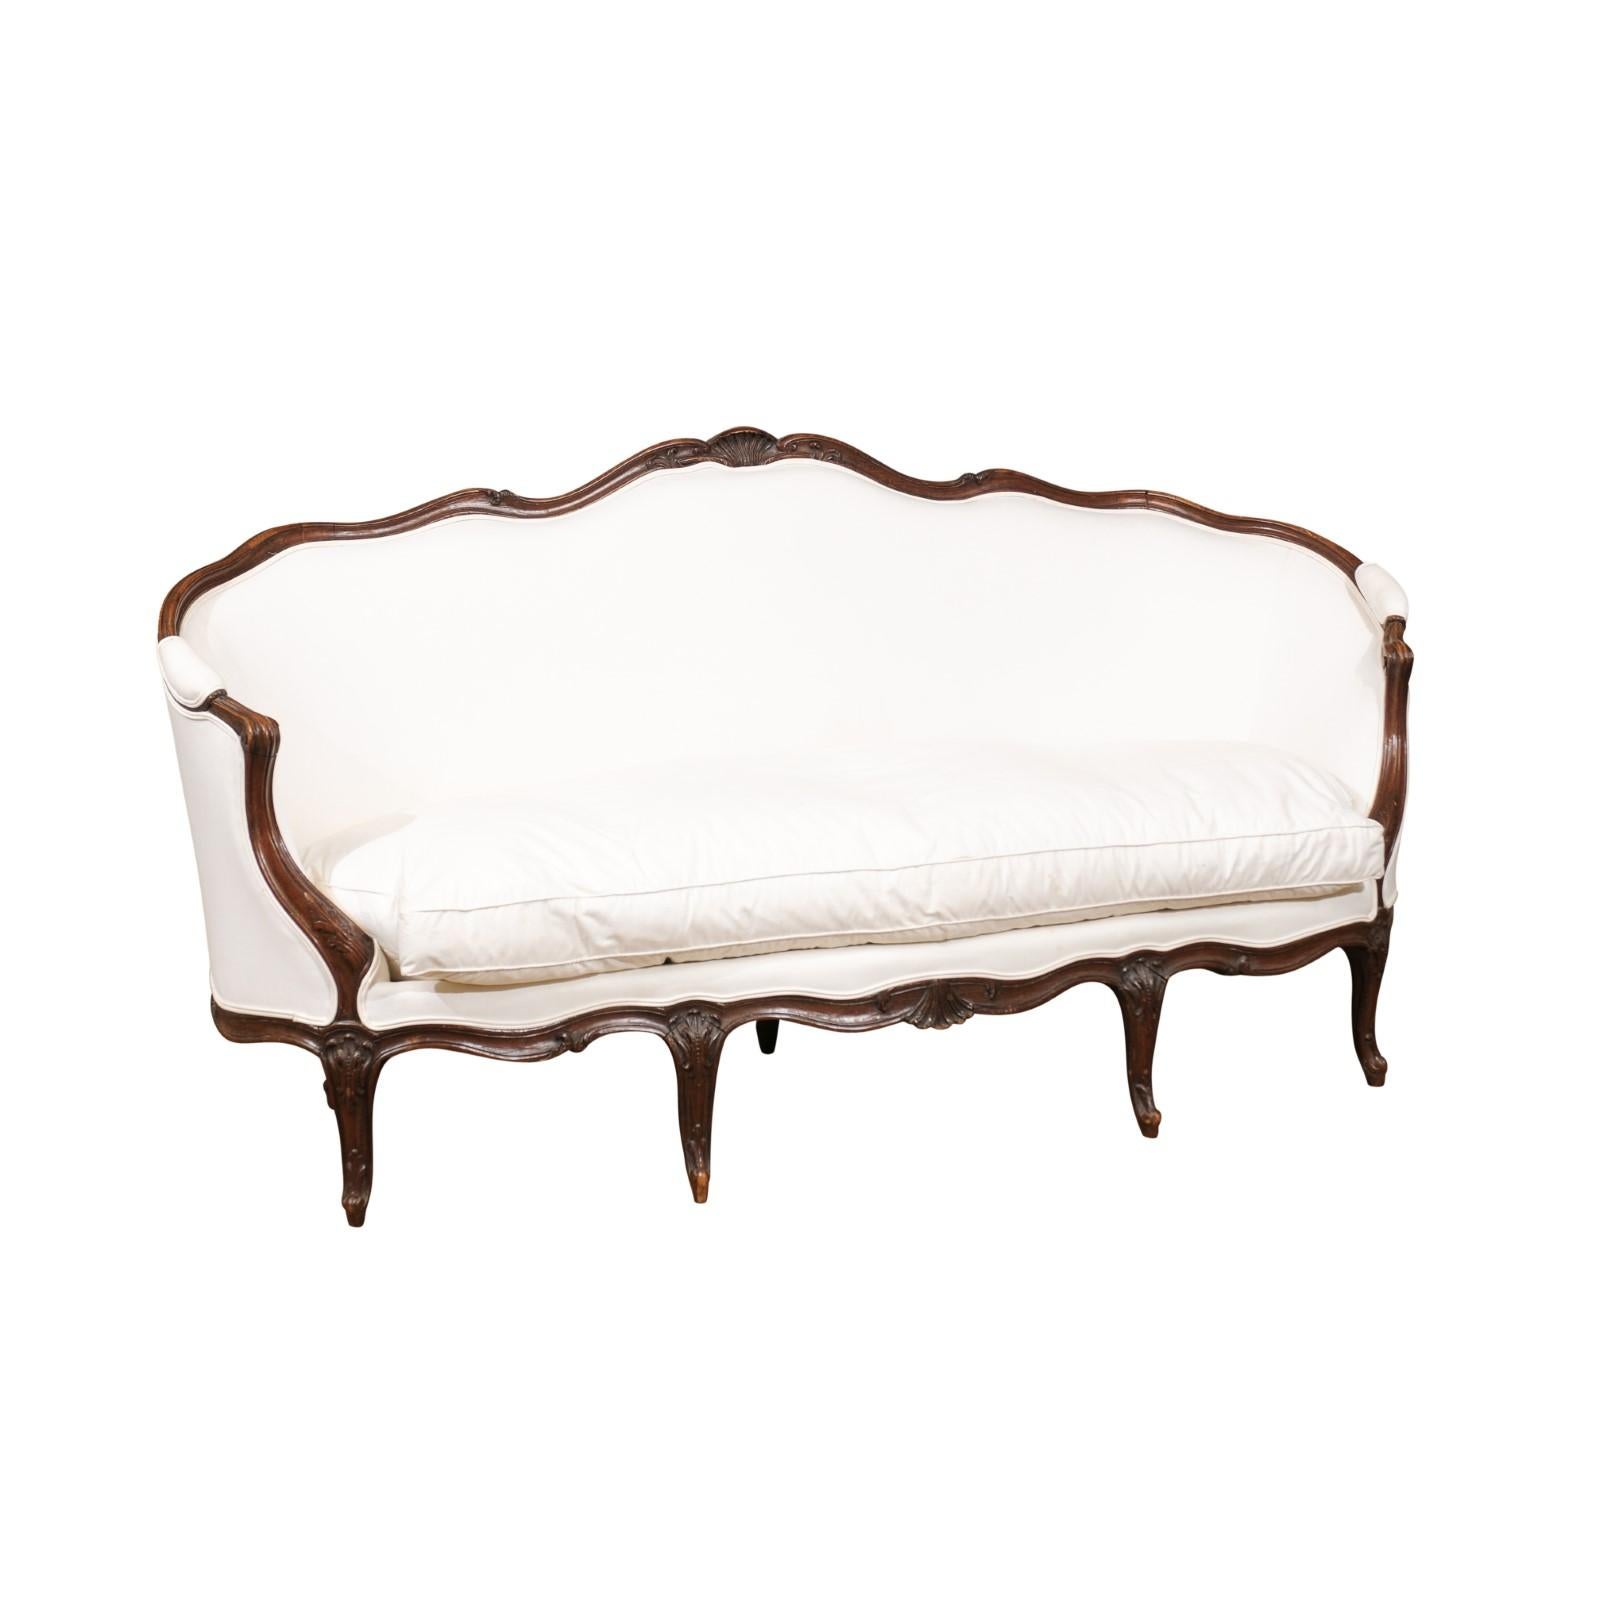 Canapé en noyer de style Louis XV, datant du milieu du XIXe siècle, avec un dossier enveloppant, des accoudoirs à volutes, des pieds cabriole et une nouvelle tapisserie beige. Ce canapé français présente un délicat dossier enveloppant, orné d'une